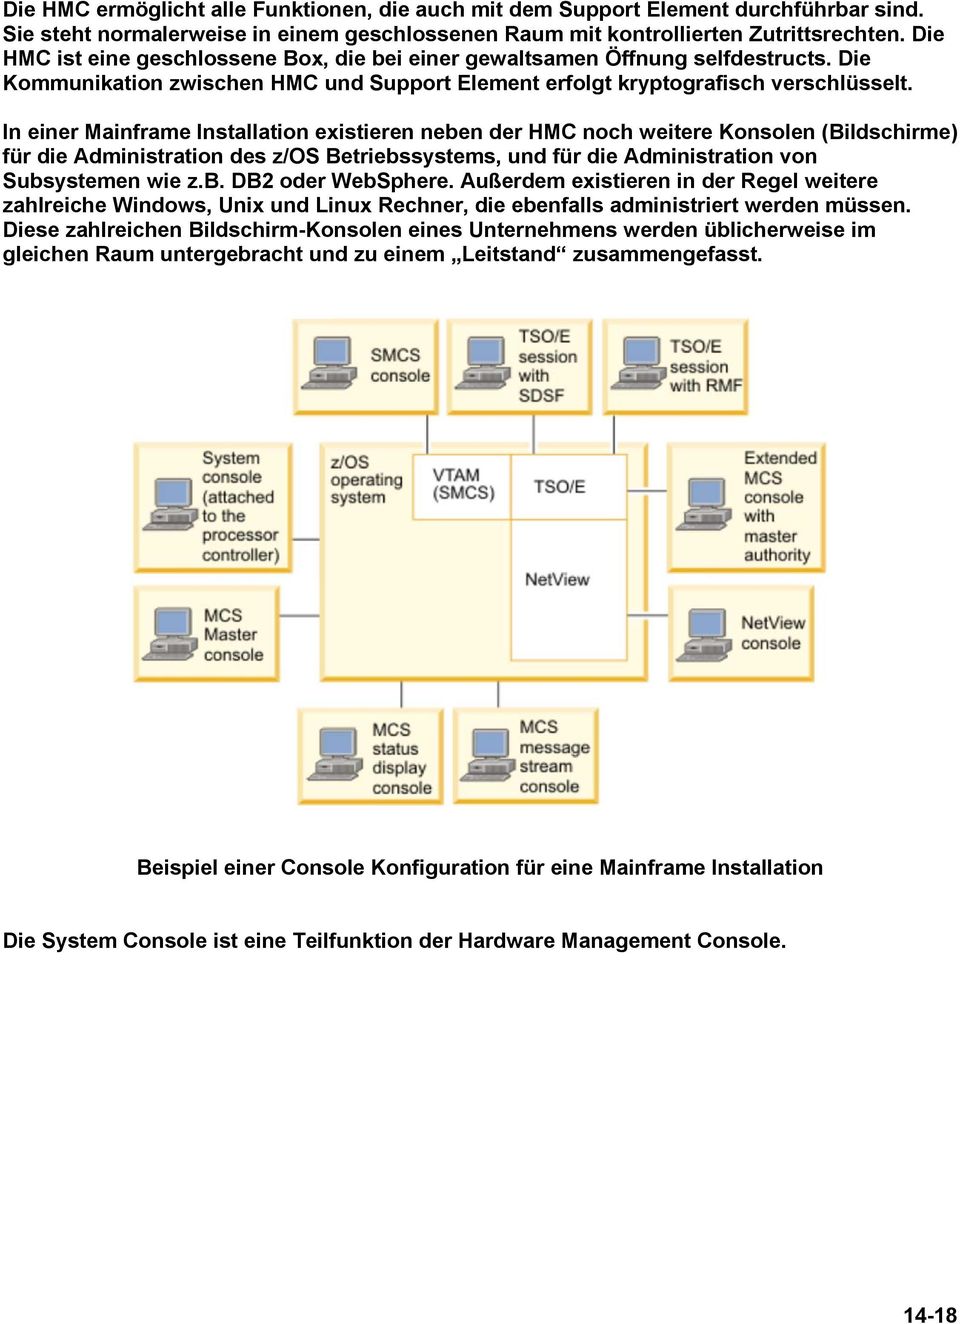 In einer Mainframe Installation existieren neben der HMC noch weitere Konsolen (Bildschirme) für die Administration des z/os Betriebssystems, und für die Administration von Subsystemen wie z.b. DB2 oder WebSphere.